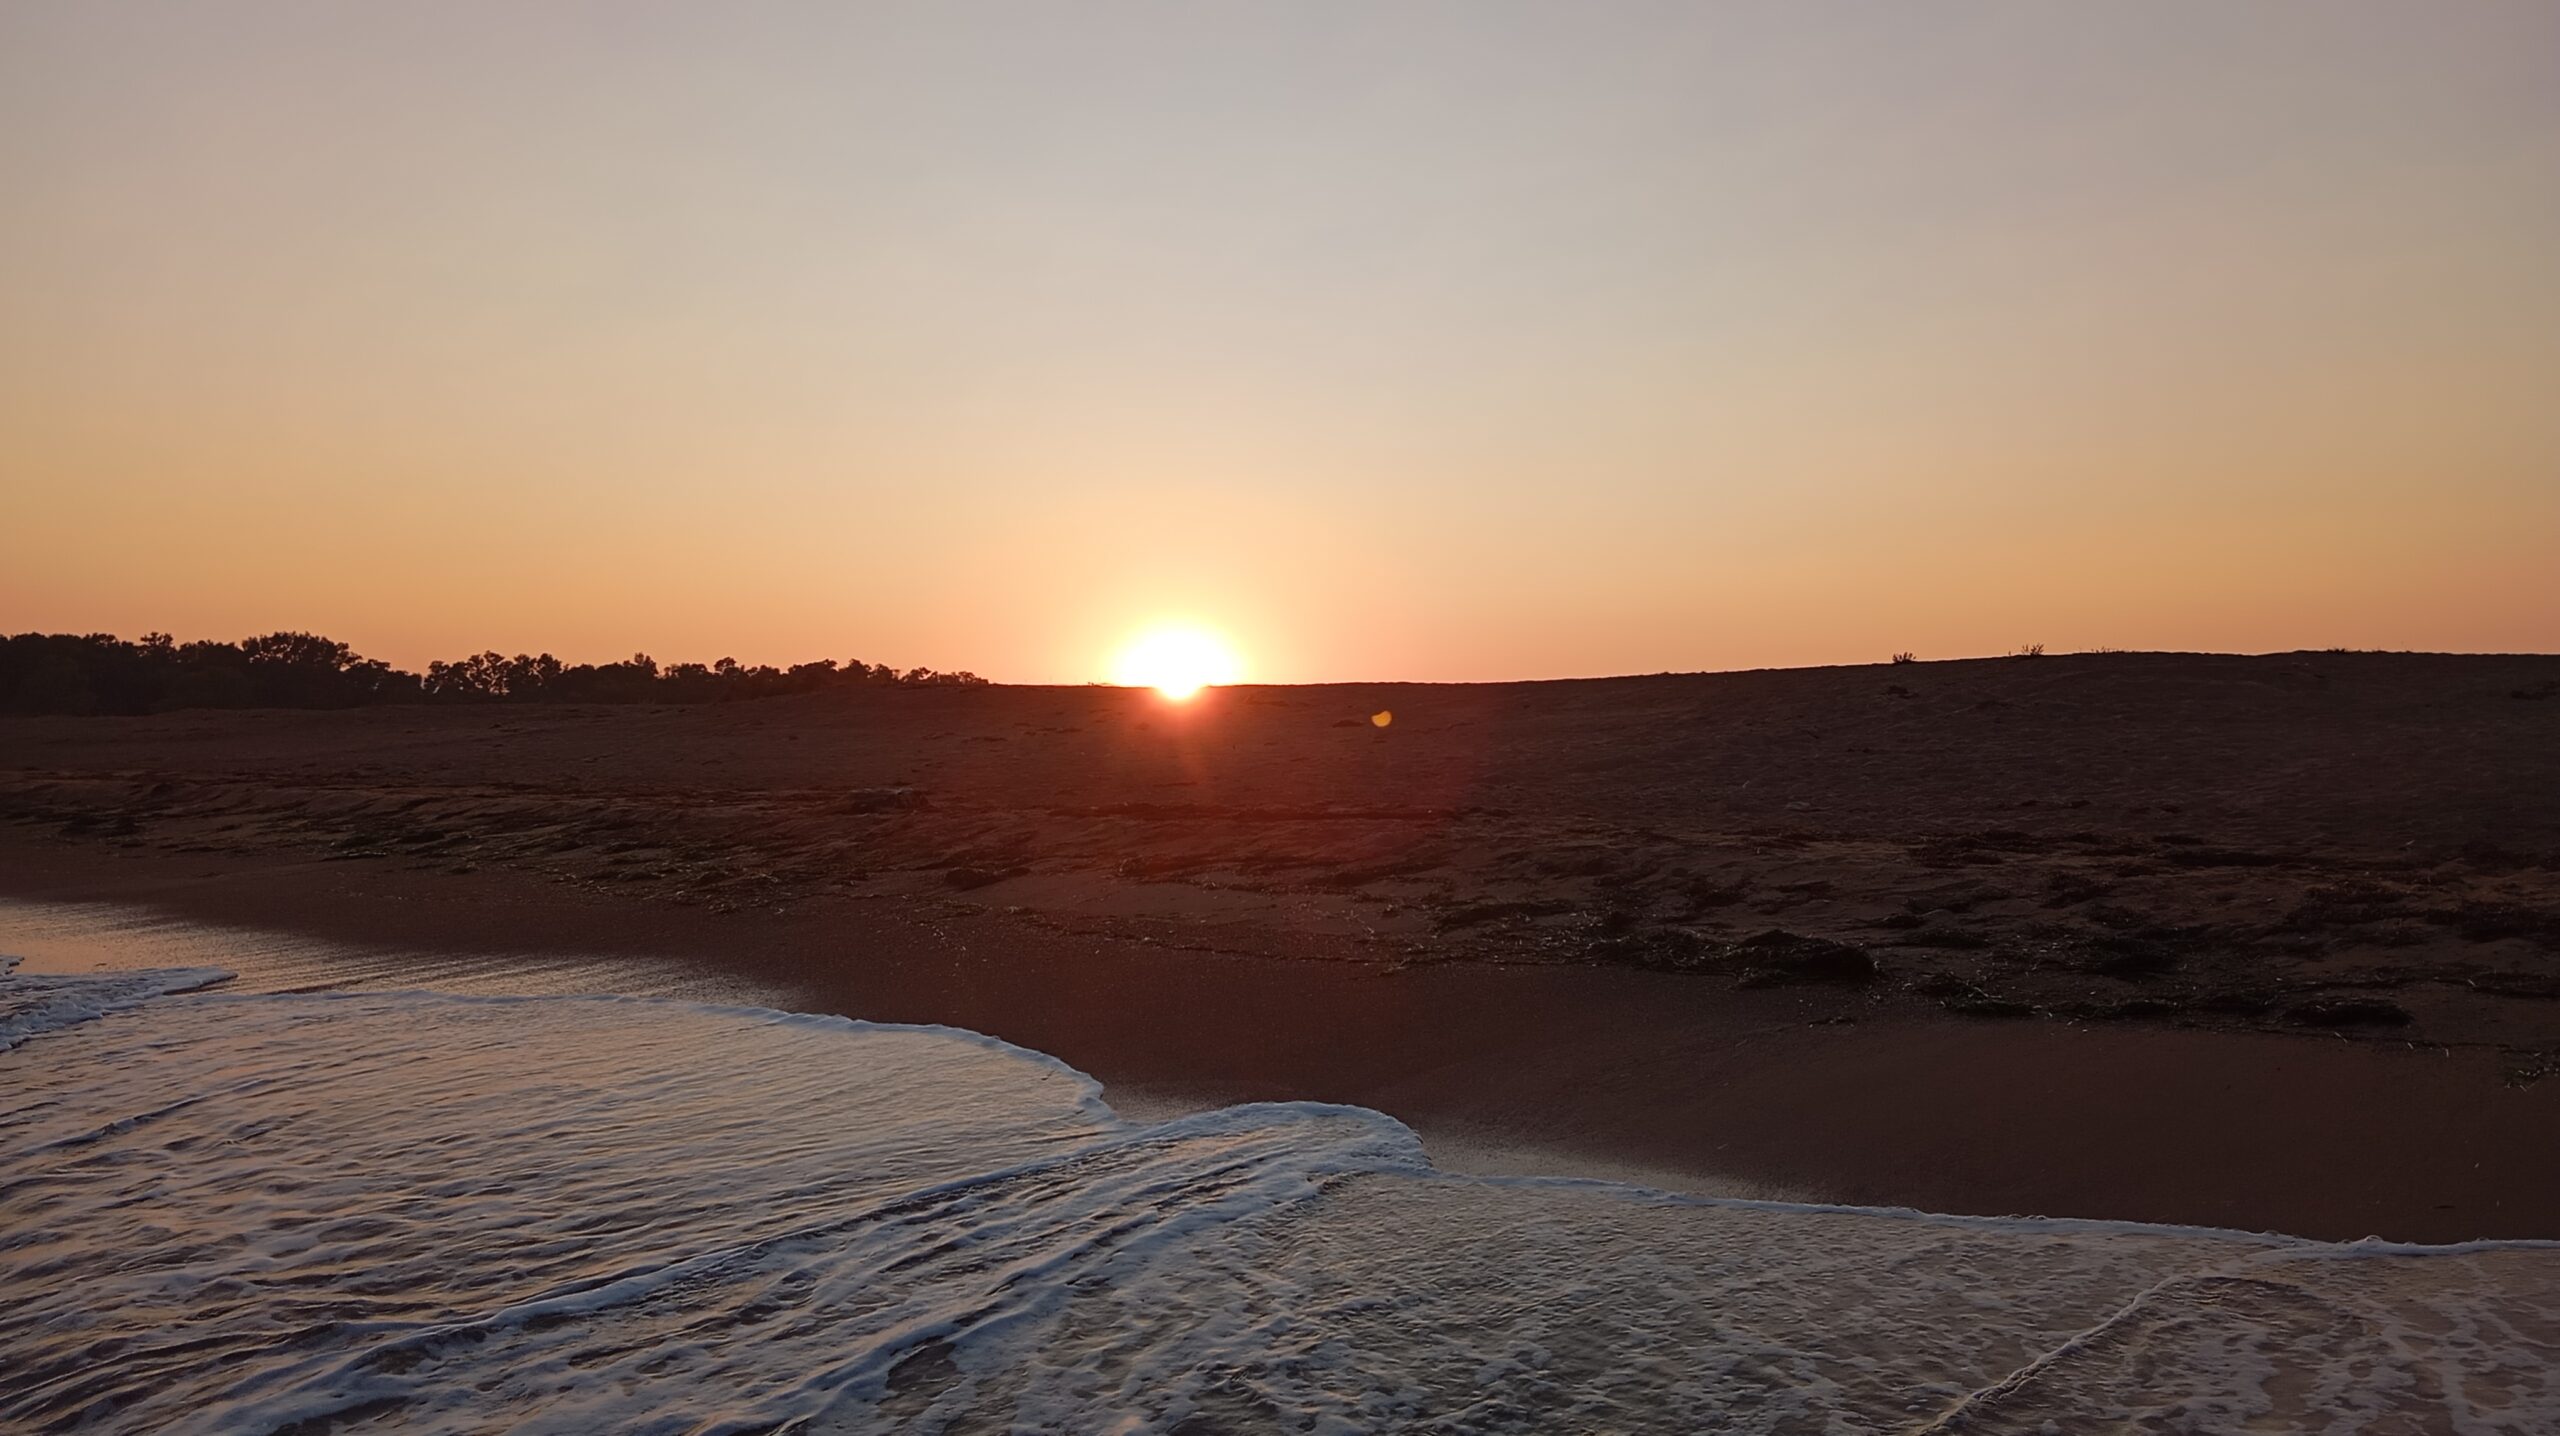 Μεσσήνη: Η παραλία του Αγίου Νικολάου κερδίζει τις εντυπώσεις αλλά και διεκδικεί μέριμνα